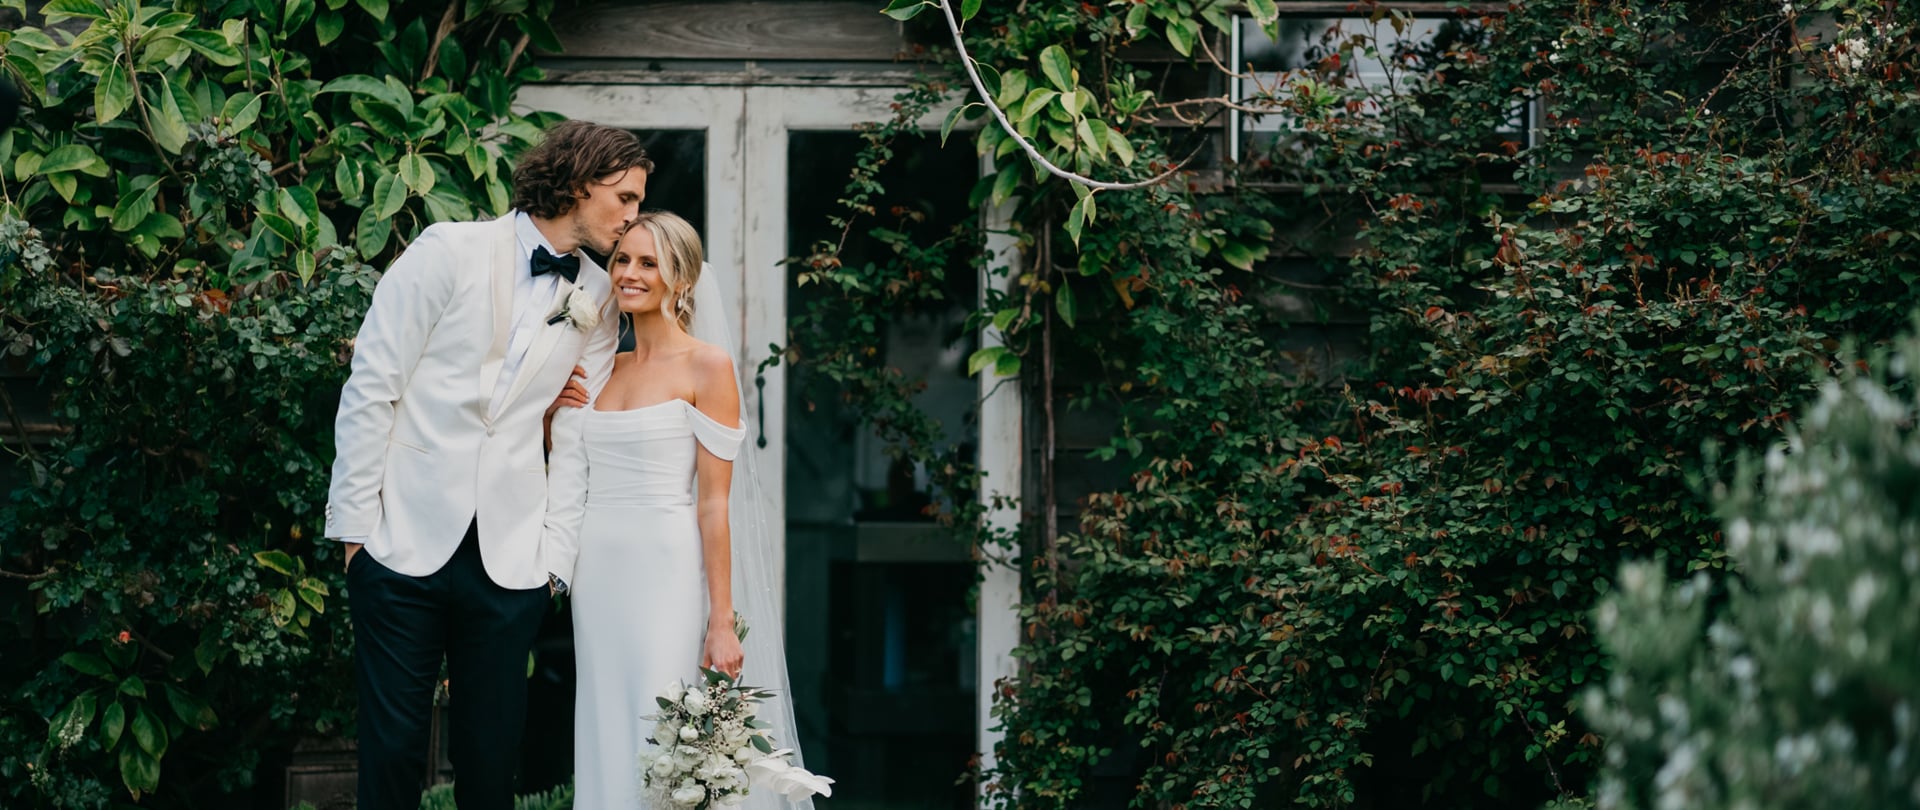 Greta & Phil Wedding Video Filmed at Mornington Peninsula, Victoria